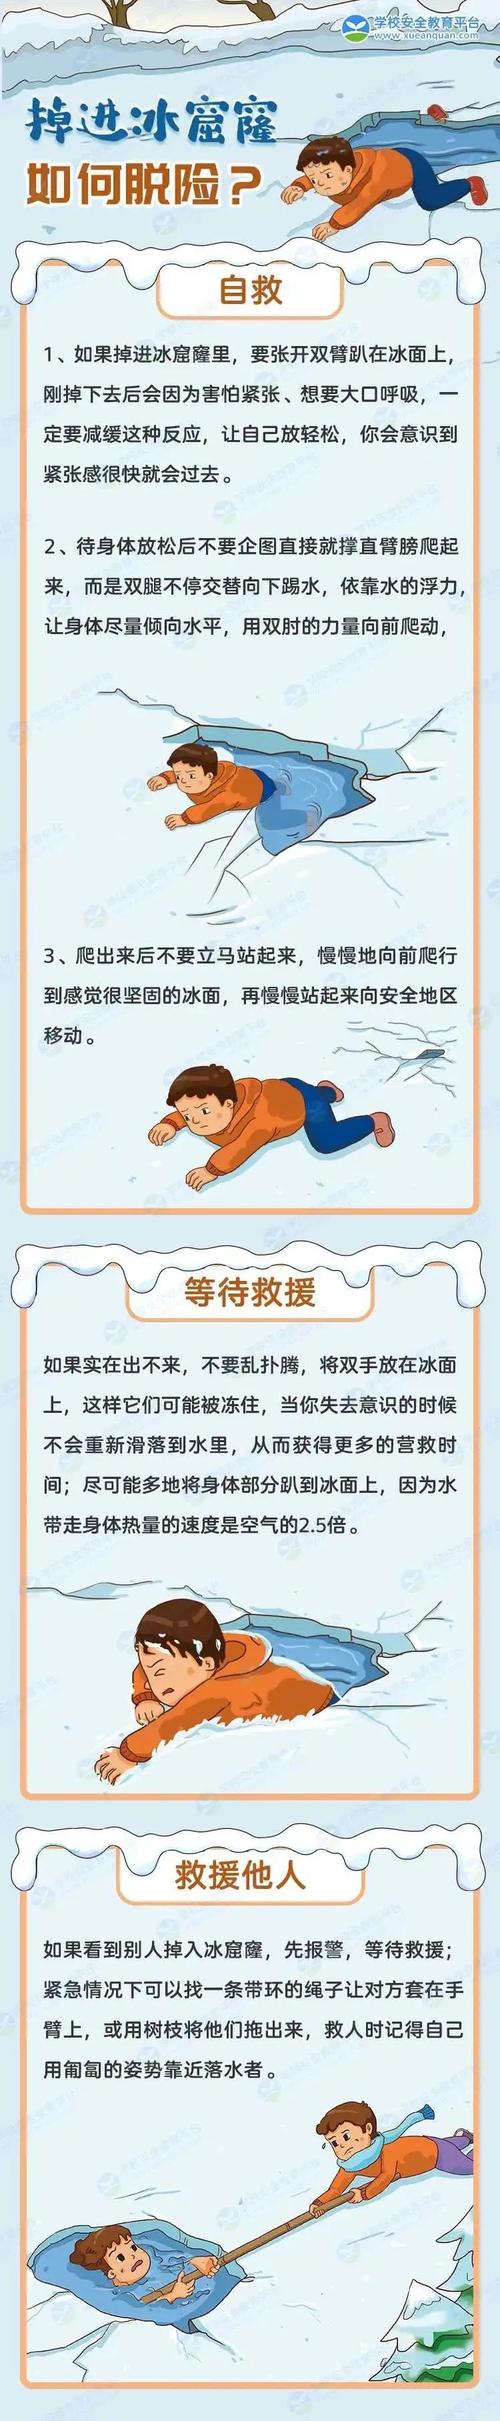 珍爱生命,严防溺水——张寨镇中心幼儿园冬季防溺水安全教育